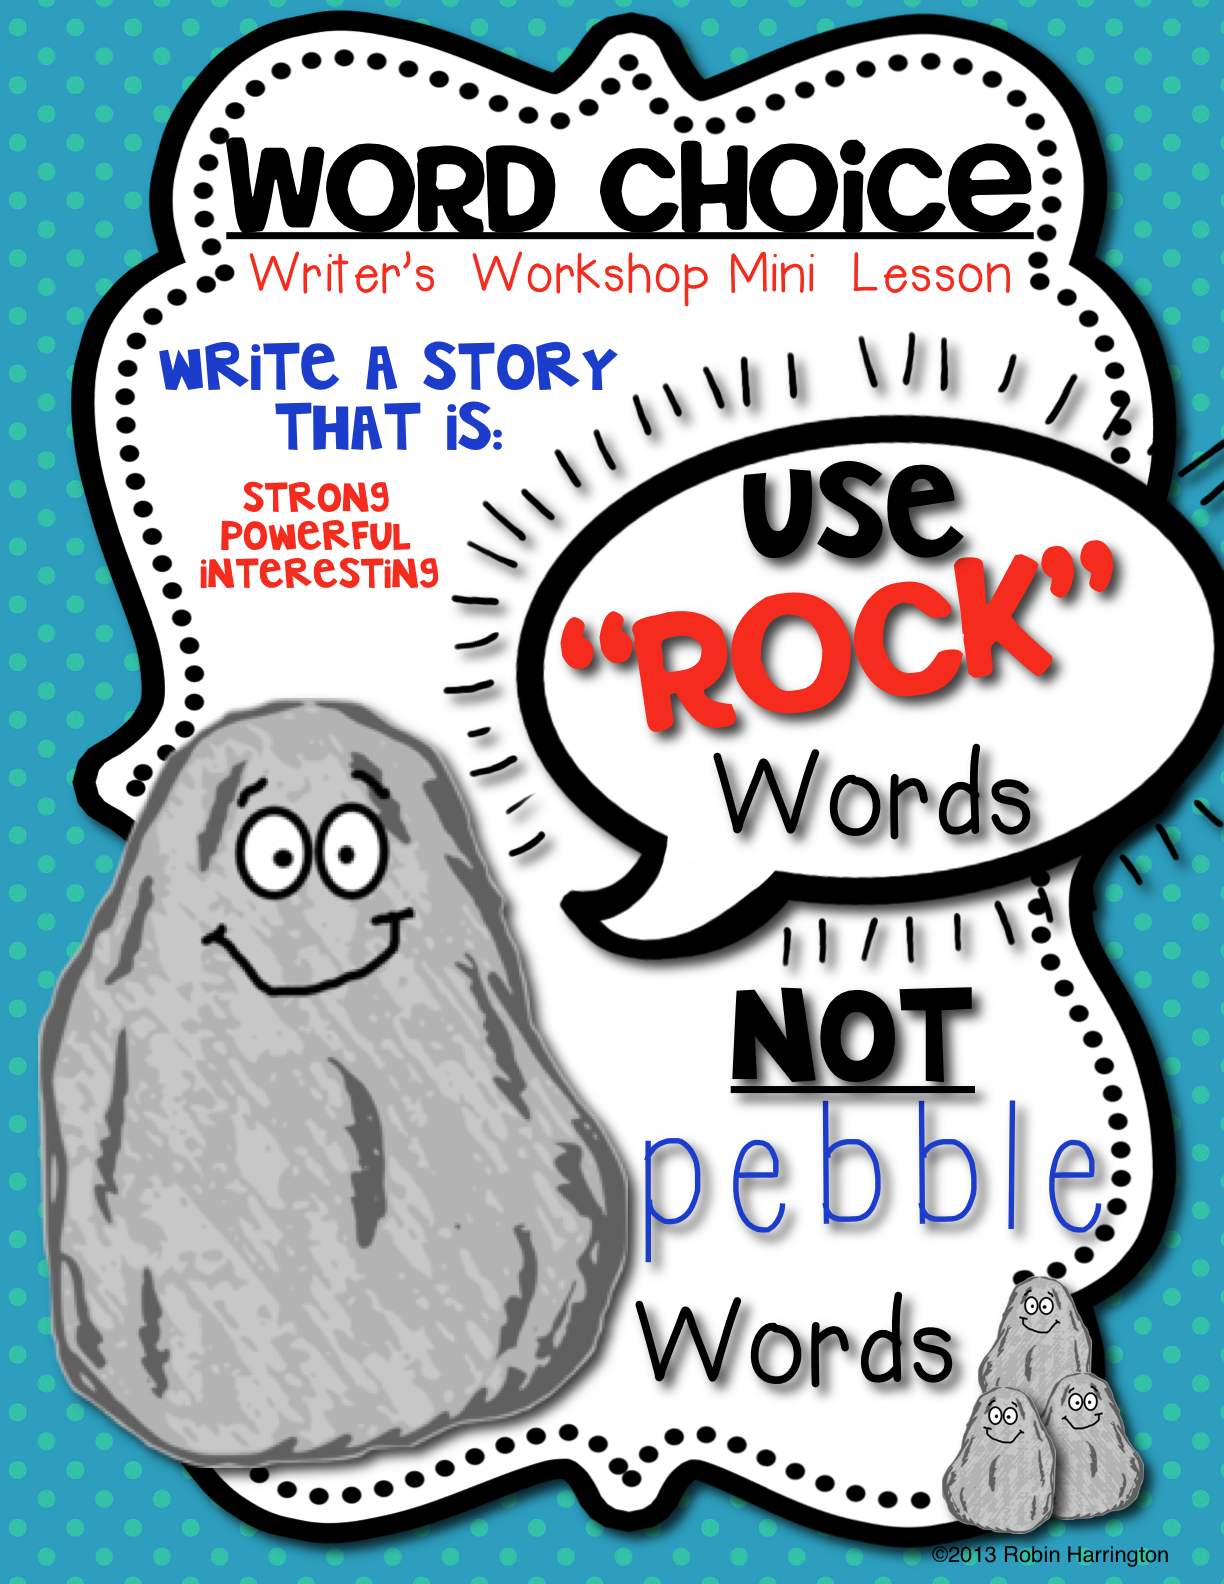 Word Choice Anchor Chart